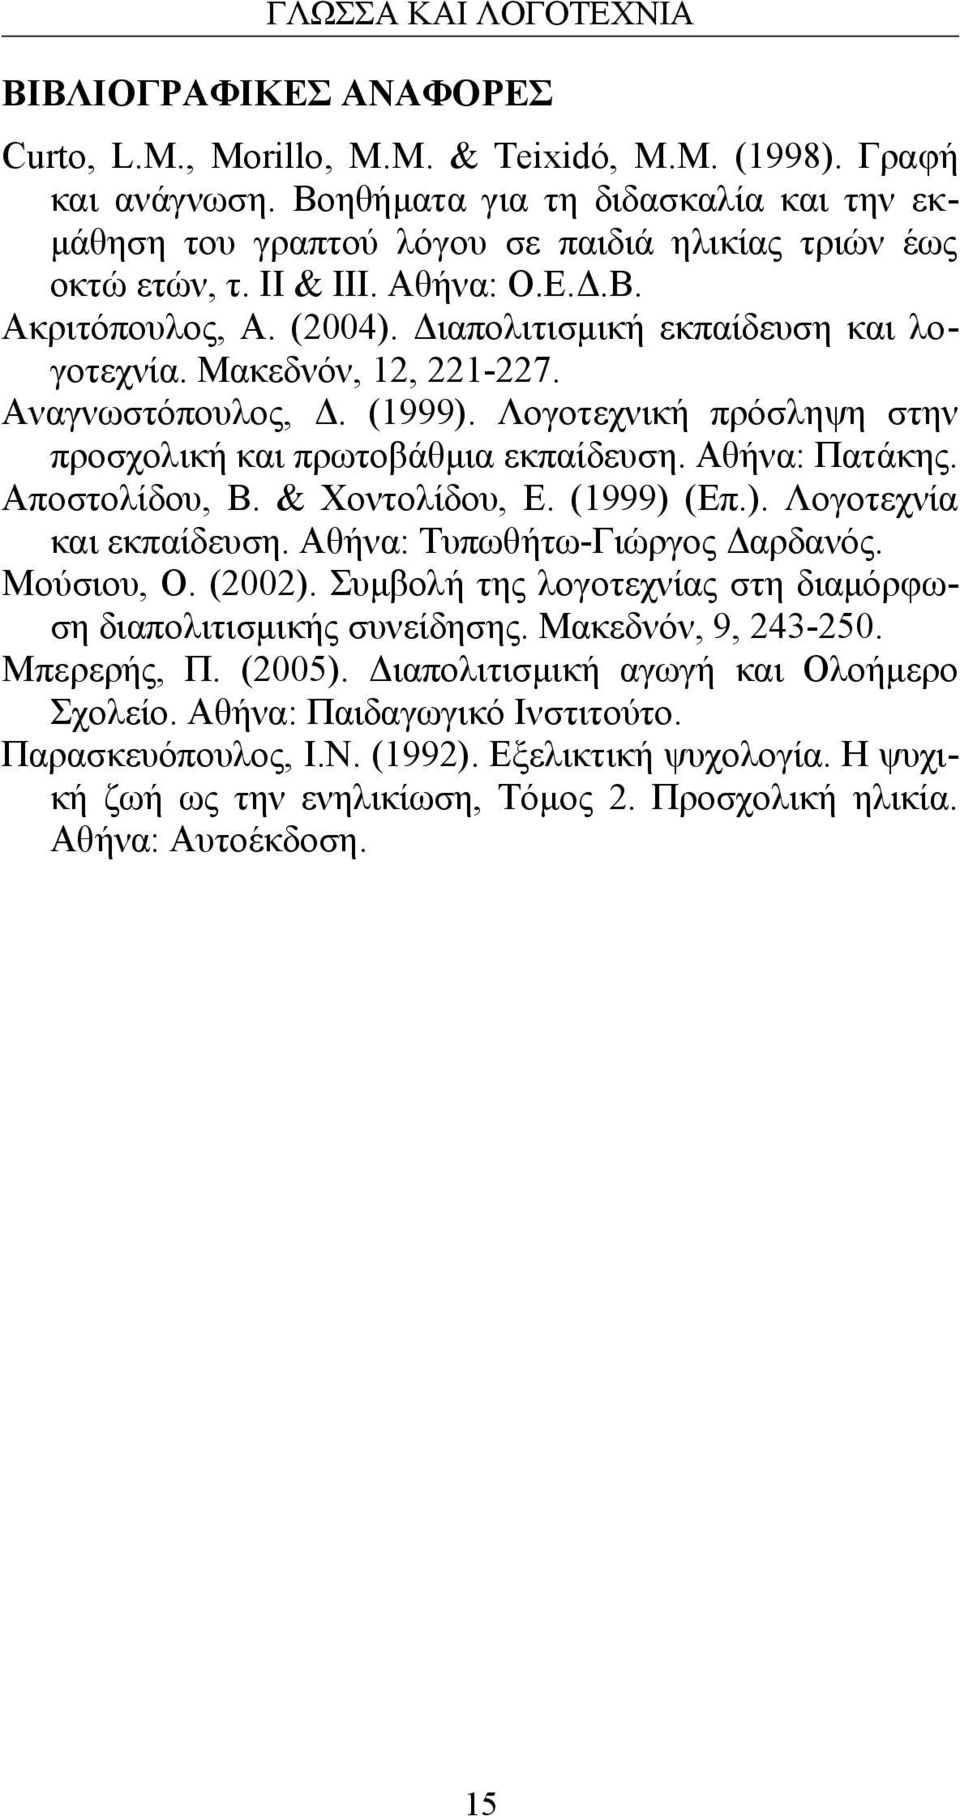 Λογοτεχνική πρόσληψη στην προσχολική και πρωτοβάθμια εκπαίδευση. Αθήνα: Πατάκης. Αποστολίδου, Β. & Χοντολίδου, Ε. (1999) (Επ.). Λογοτεχνία και εκπαίδευση. Αθήνα: Τυπωθήτω-Γιώργος Δαρδανός. Μούσιου, Ο.